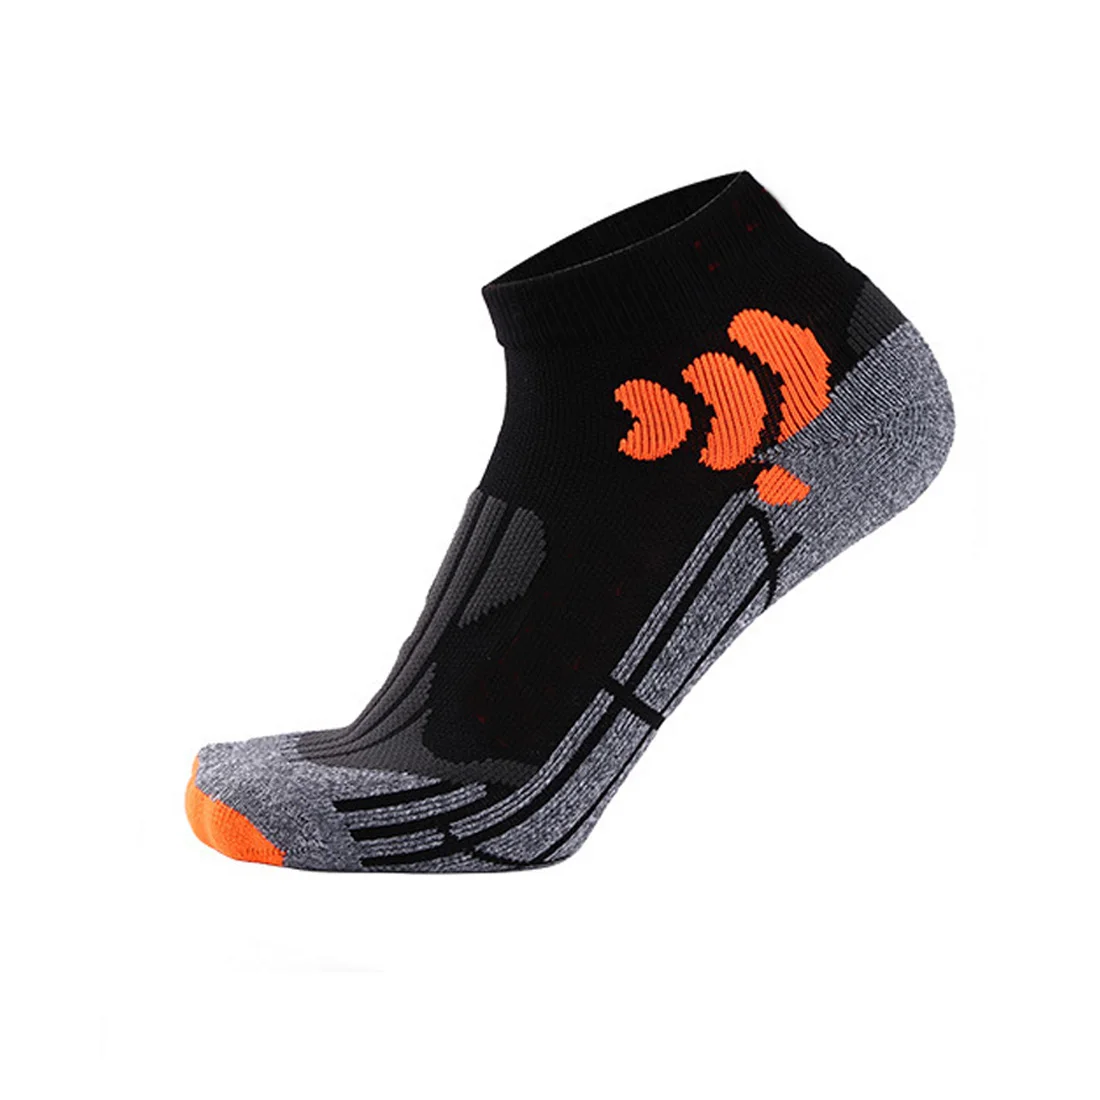 Хлопковые Компрессионные носки для бега, спортивные носки для мужчин и женщин, плотные спортивные дышащие носки для занятий спортом на открытом воздухе, фитнесом, soc - Цвет: Черный